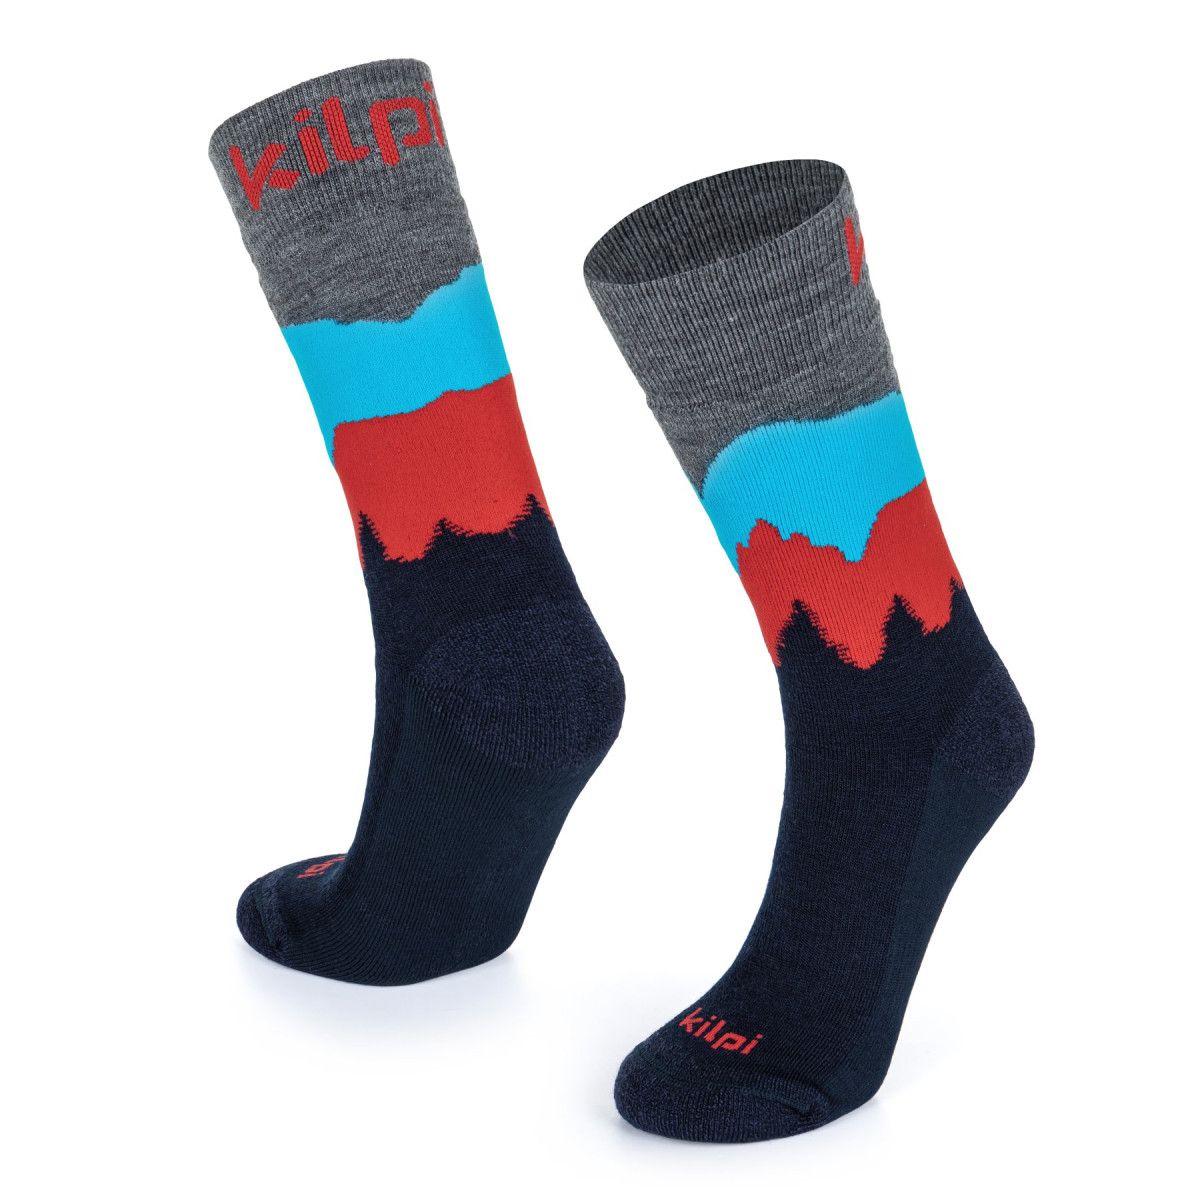 Unisex ponožky z merino vlny Kilpi NORS-U černé 32-36